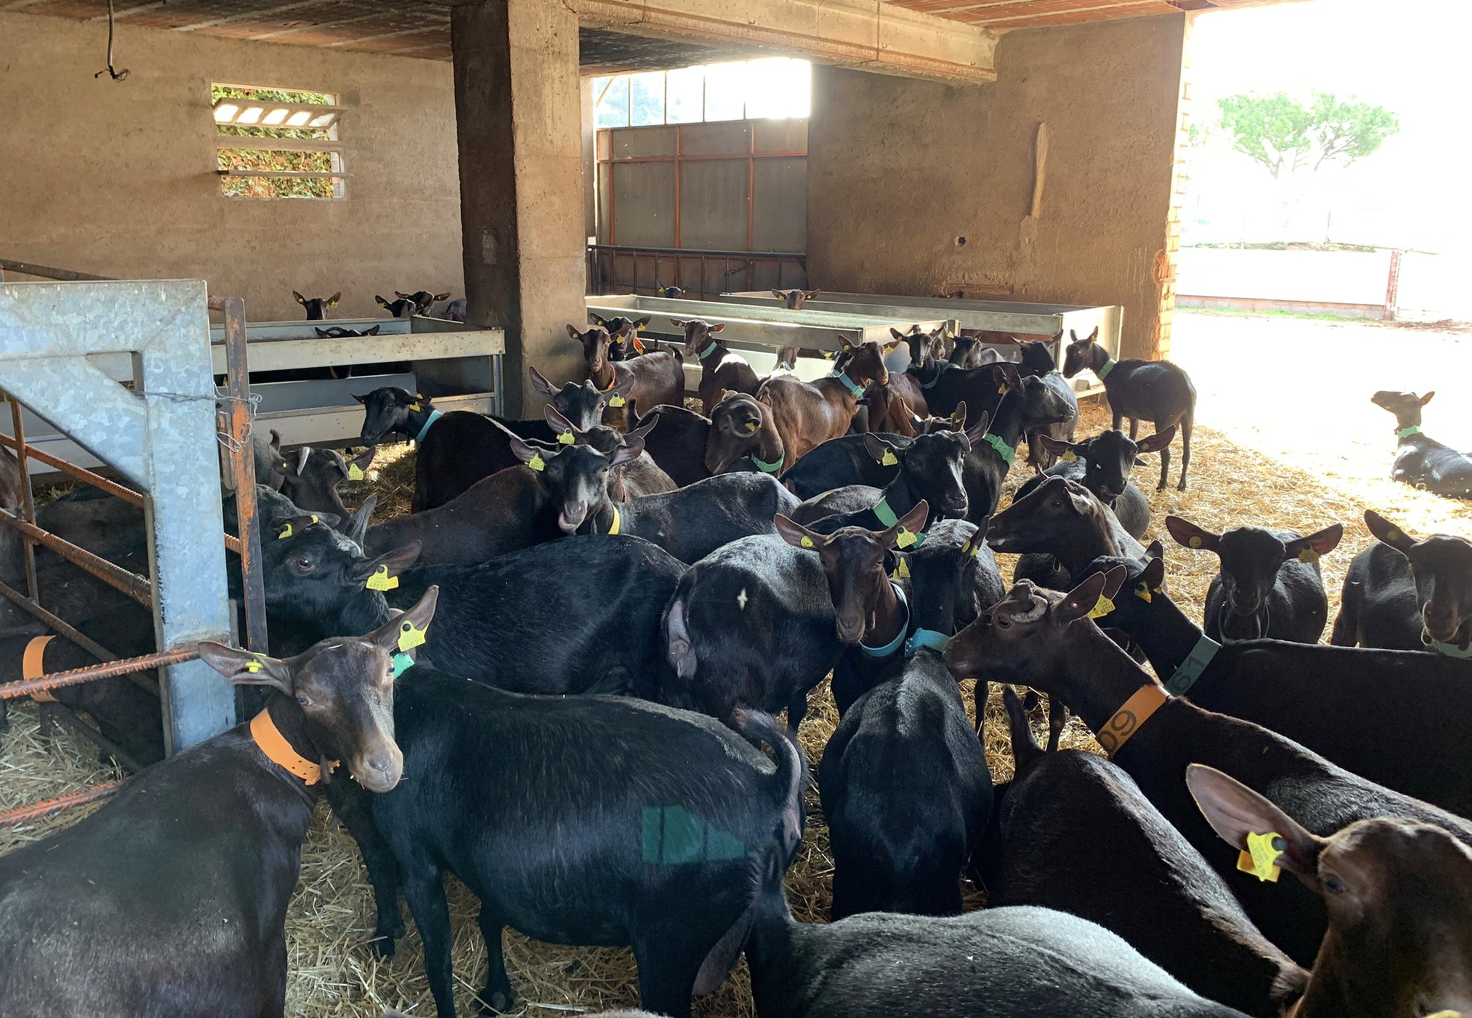 μέτρα βιοασφάλειας στις κτηνοτροφικές εκμεταλλεύσεις